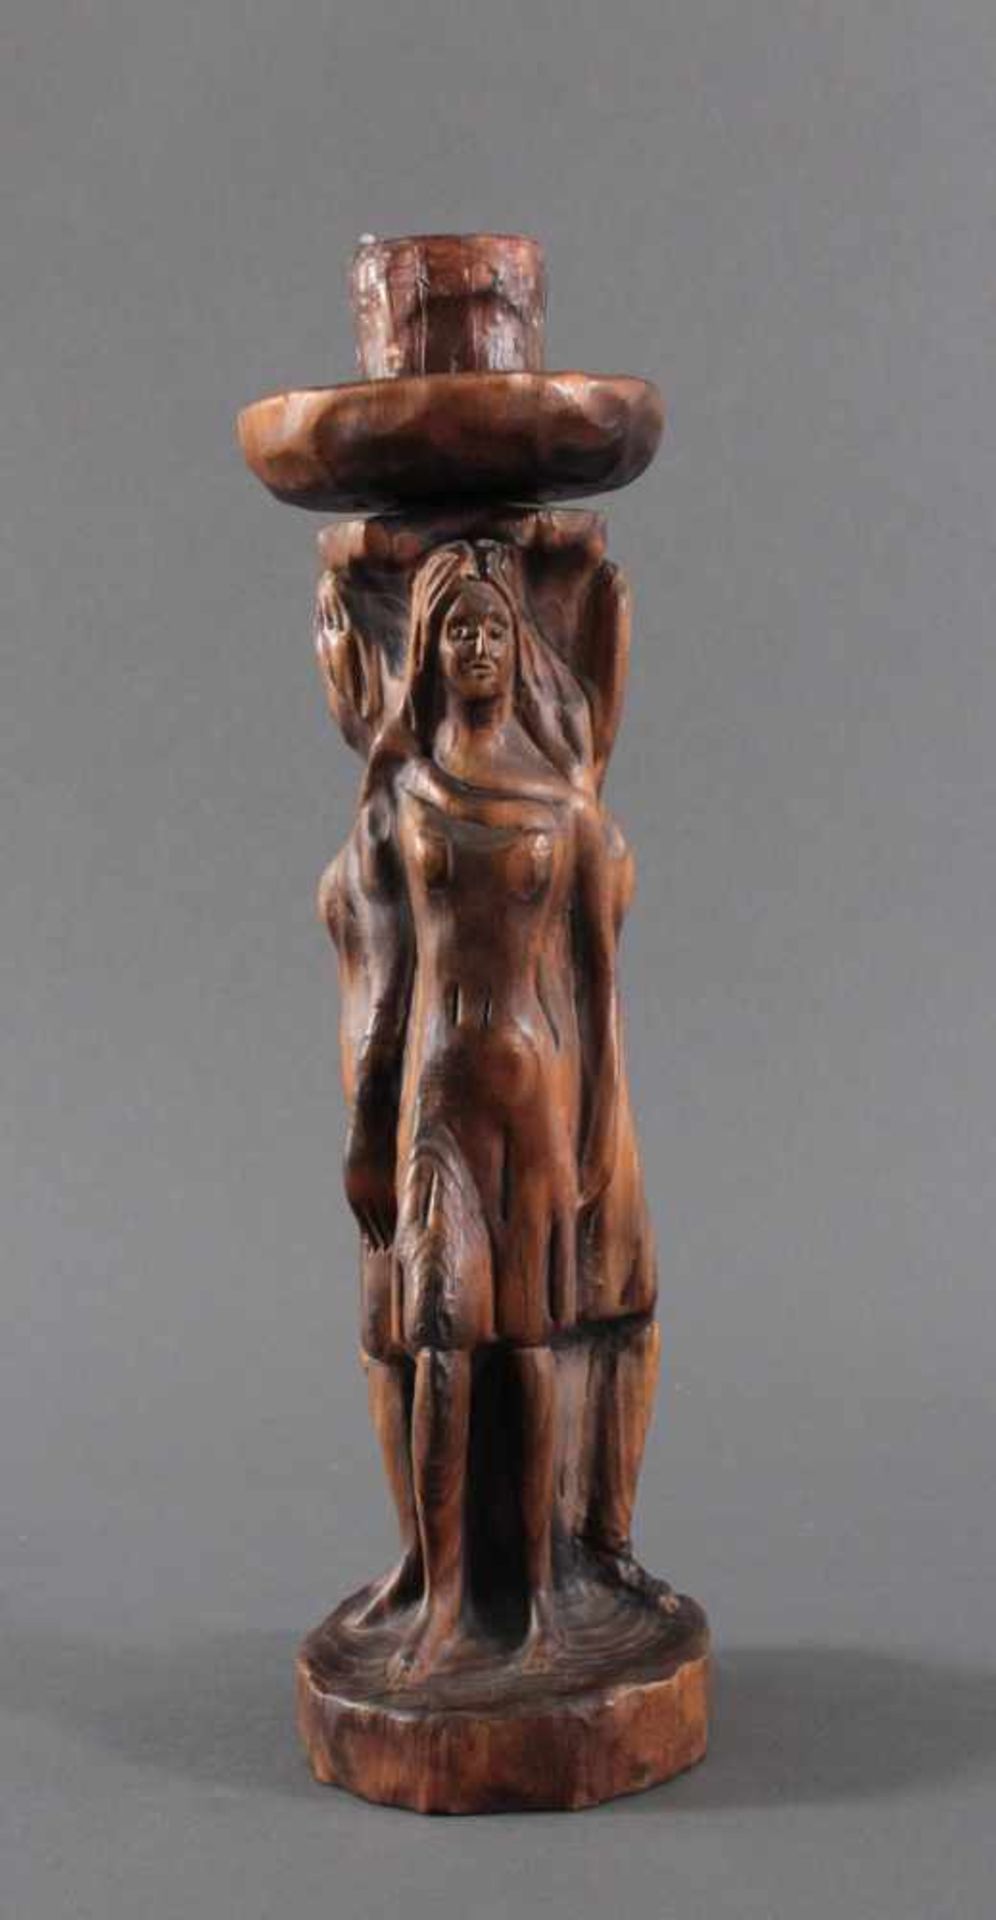 Holz-Skulptur "Flamme"Aus dem Vollholz plastisch geschnitzt, 3 Frauen mit dem Rücken aneinander - Bild 3 aus 5